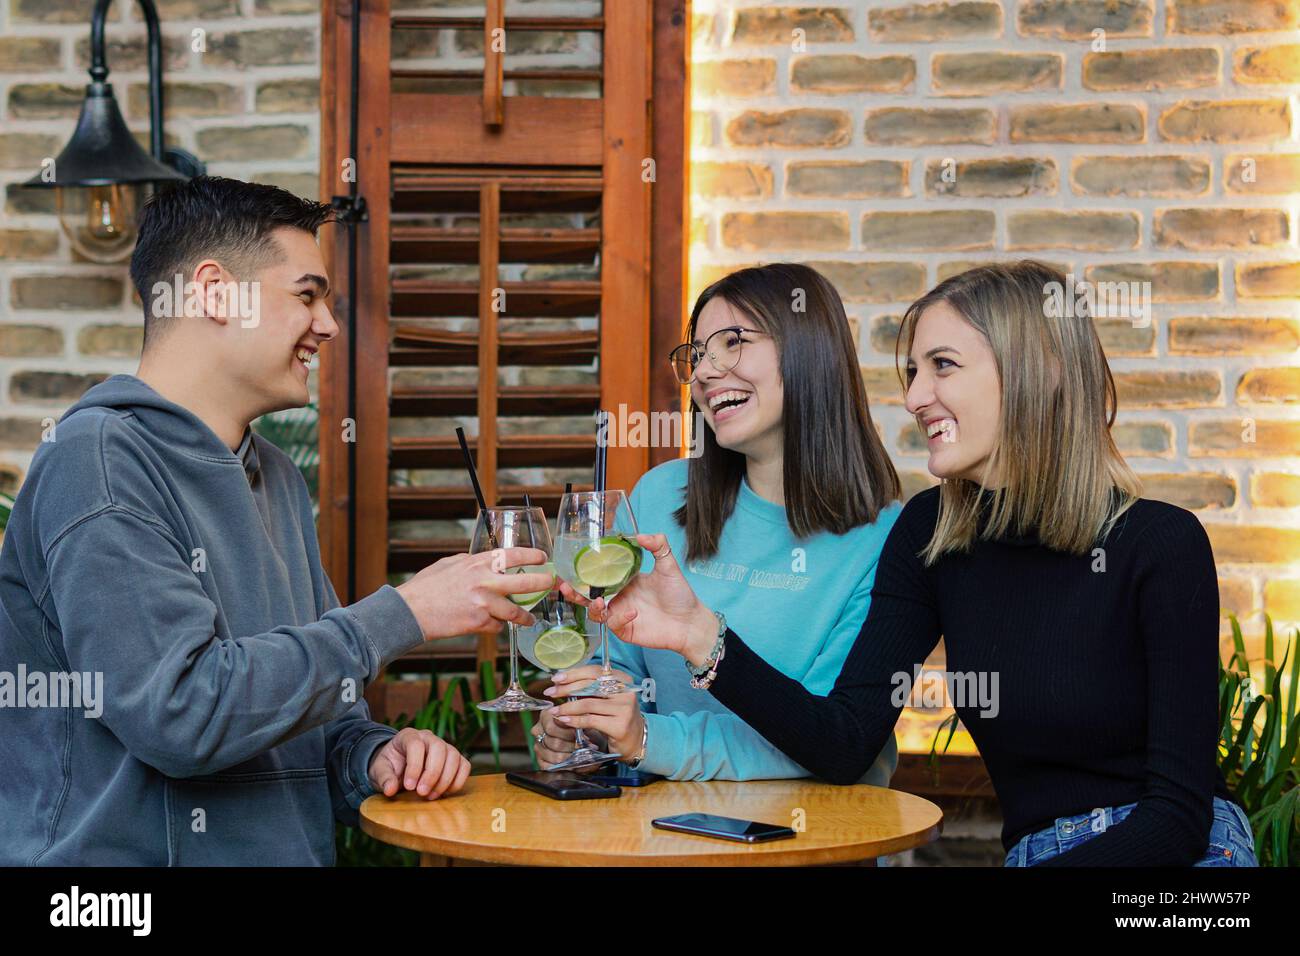 Les jeunes s'amusent dans un bar - des amis se sont amusés à boire des cocktails ensemble Banque D'Images